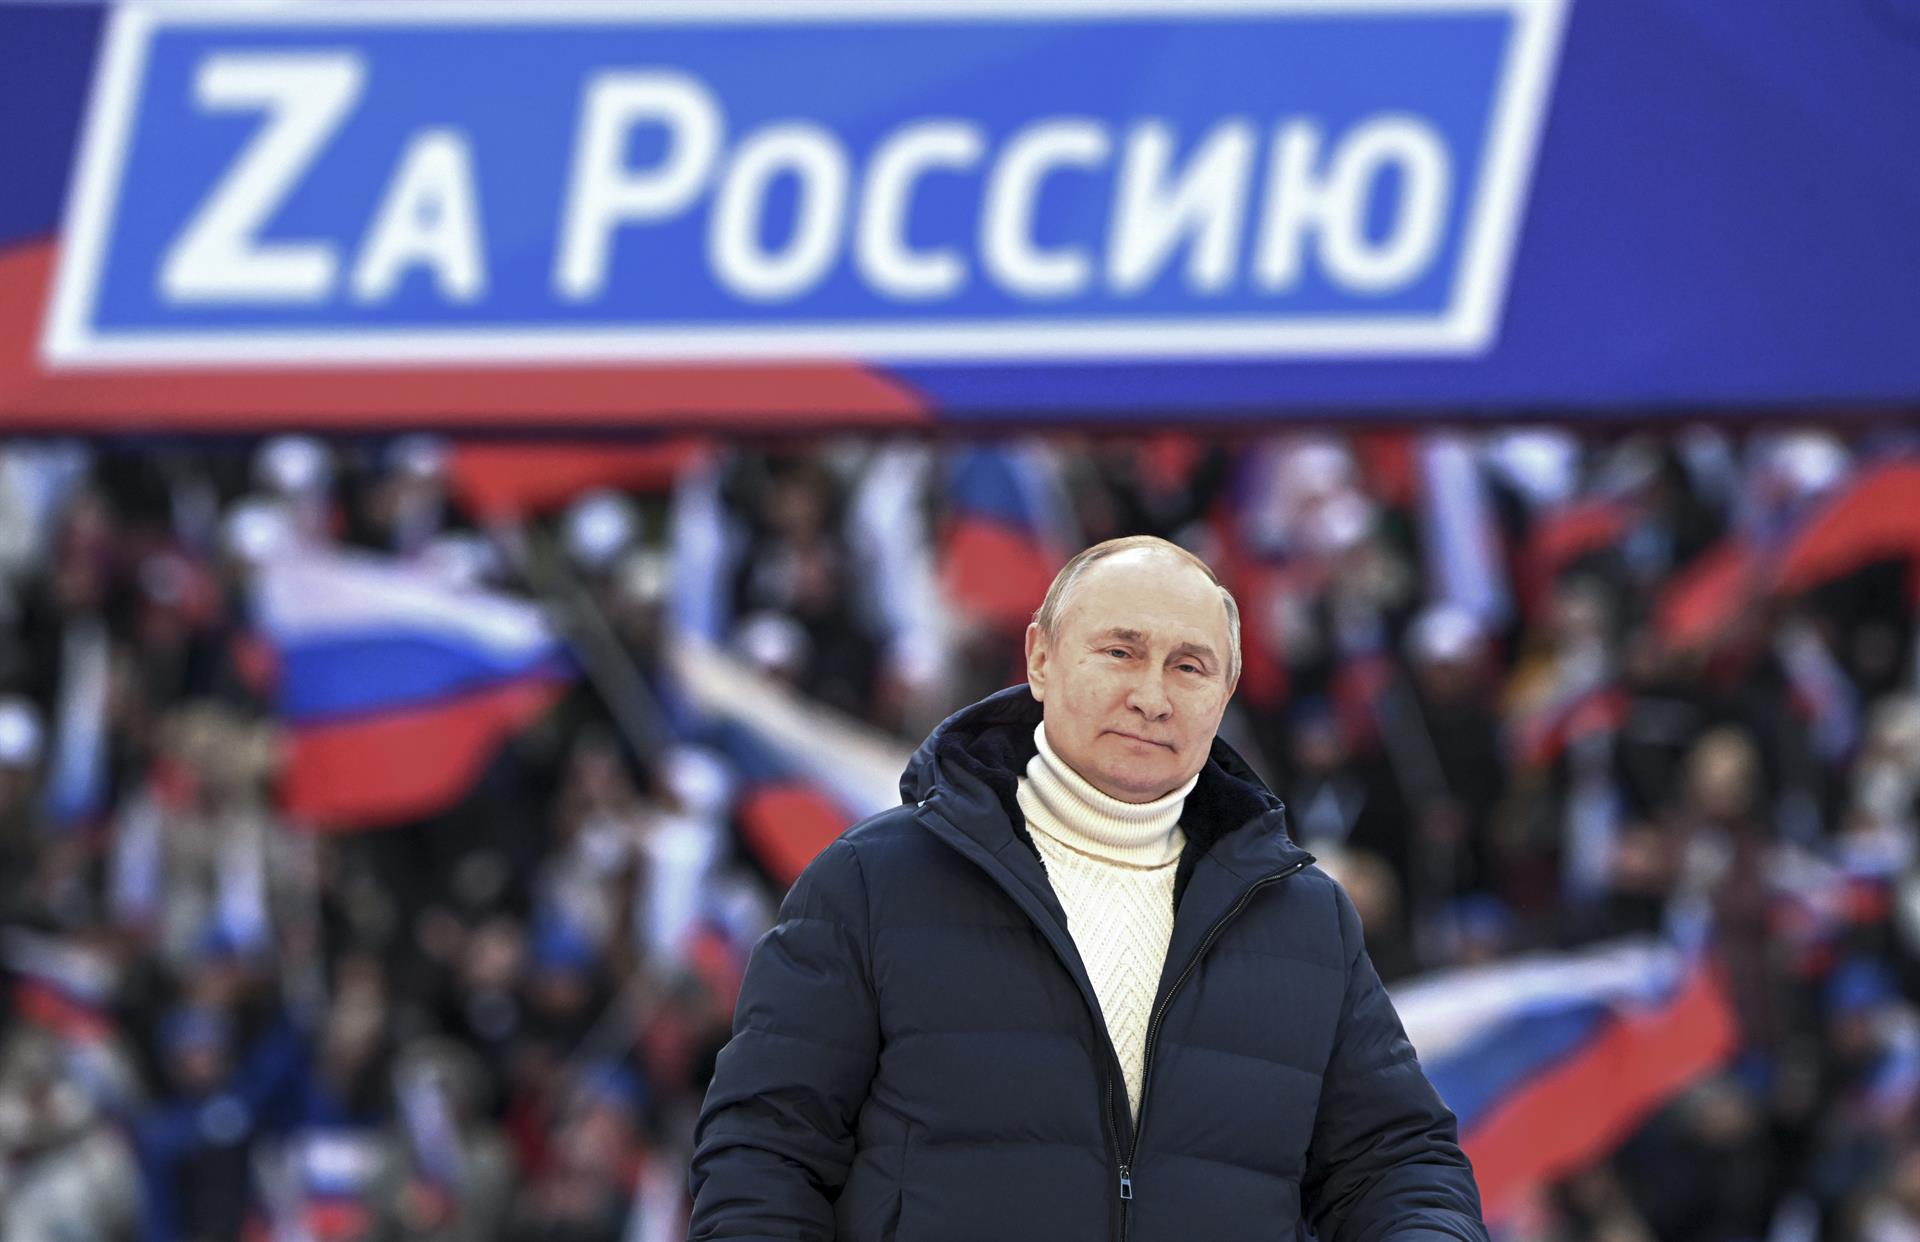 ¿La élite rusa quiere eliminar a Putin?